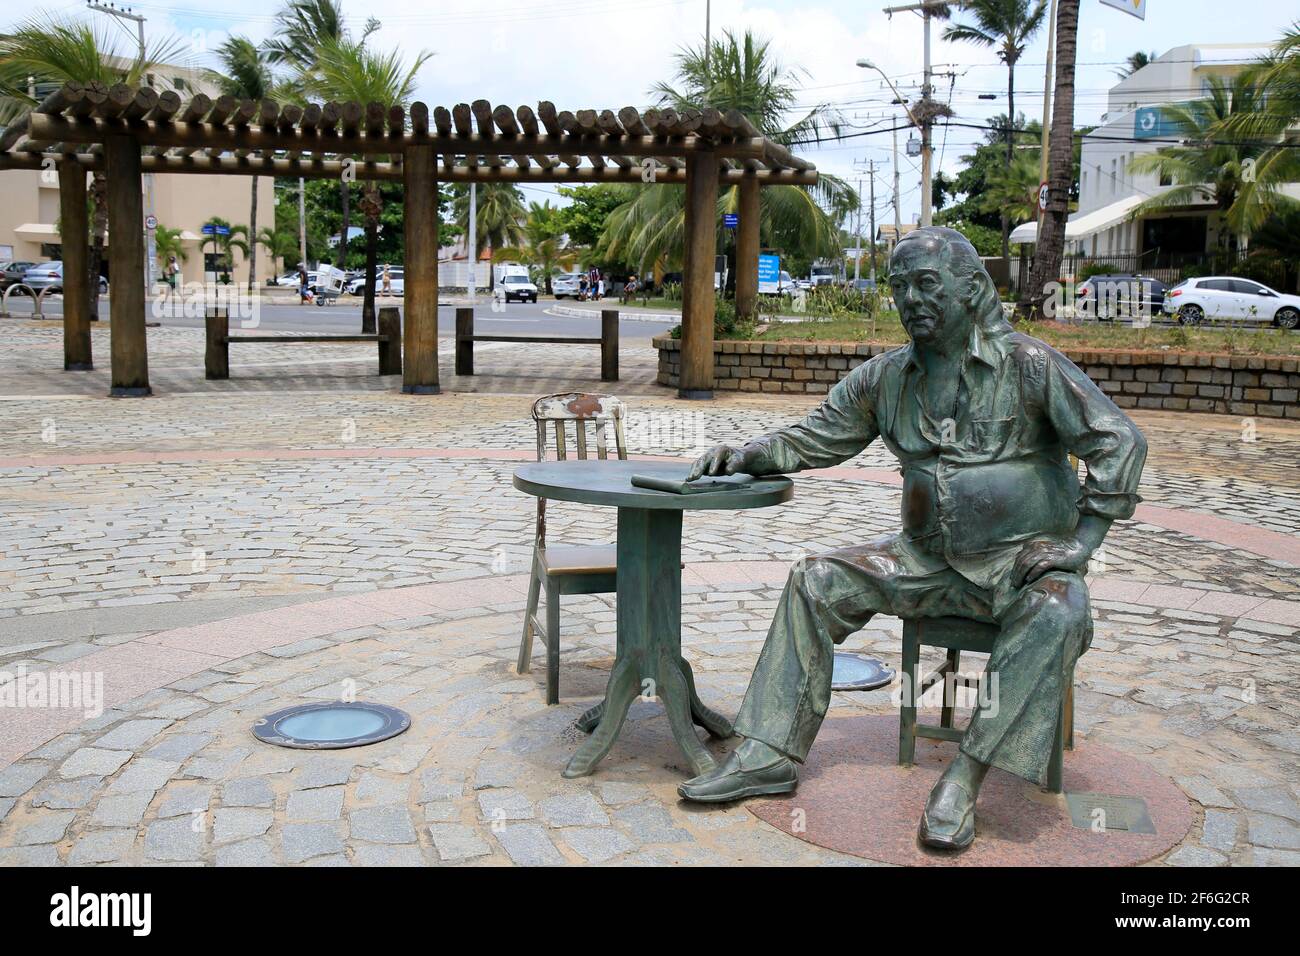 salvador, bahia, brésil - 21 décembre 2020 : la statue du poète Vinicius de Moraes est vue dans le quartier d'Itapua, dans la ville de Salvador. *** Banque D'Images